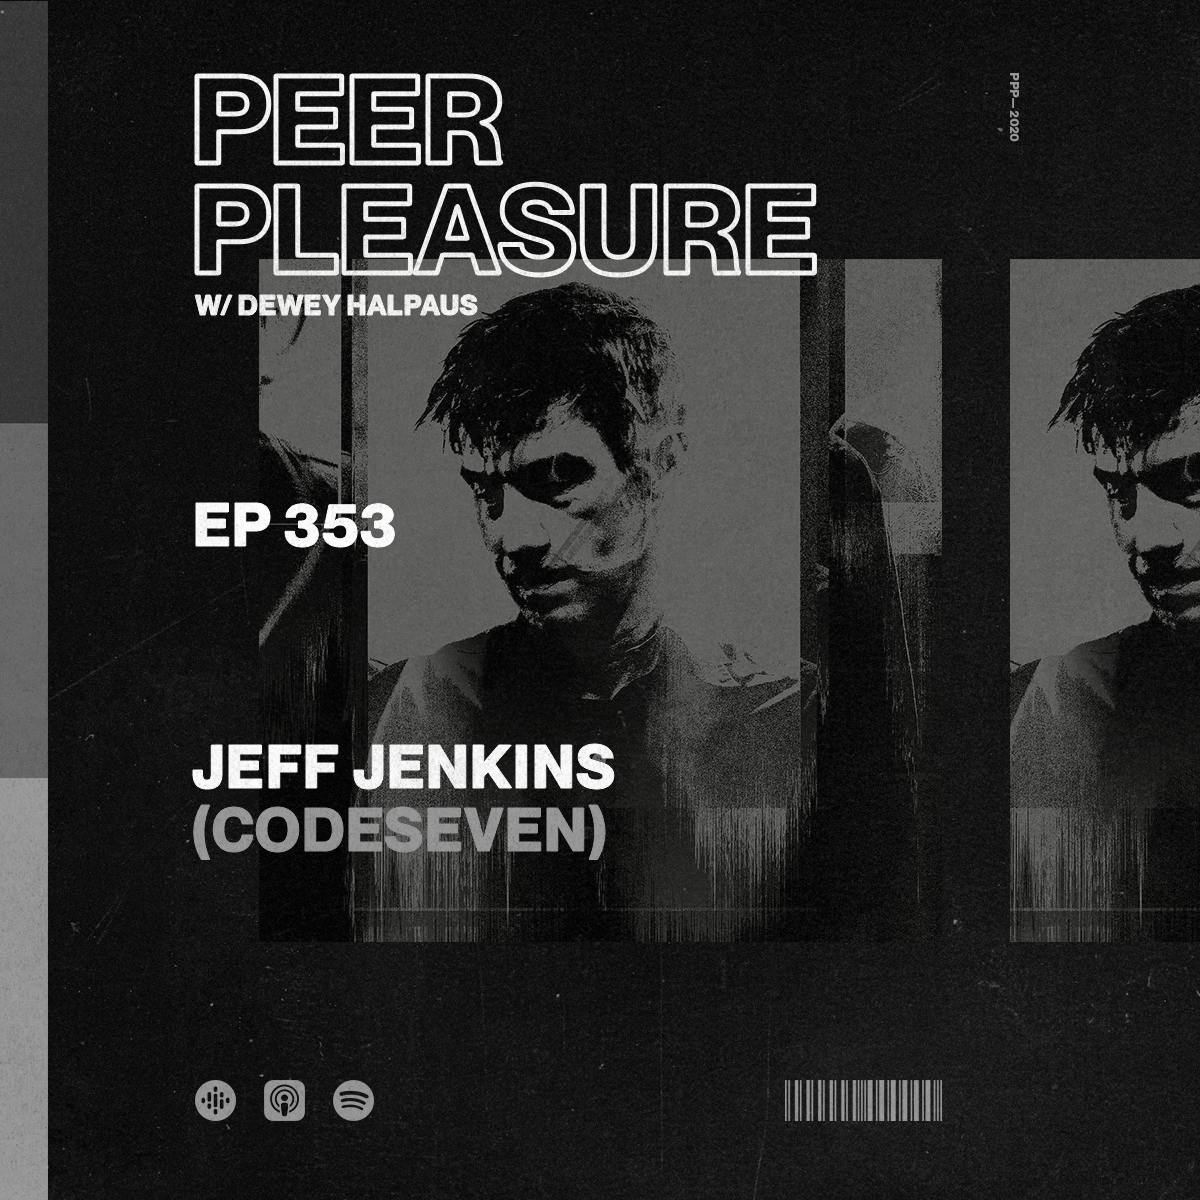 Jeff Jenkins (Codeseven) Part 2